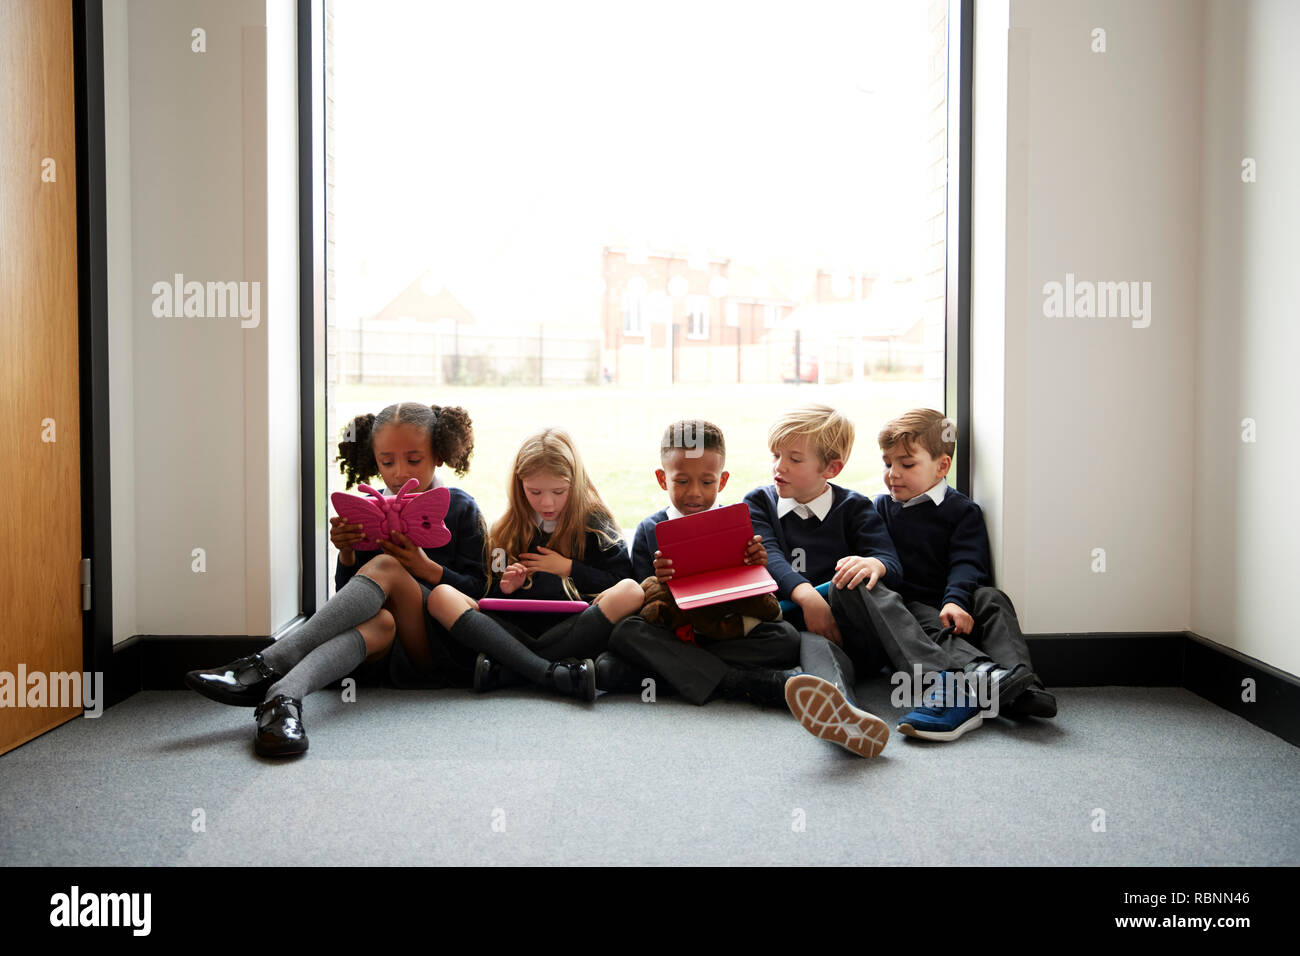 La escuela primaria los niños sentados en una fila en el suelo, delante de una ventana en el corredor de la escuela utilizando ordenadores Tablet, vista frontal Foto de stock